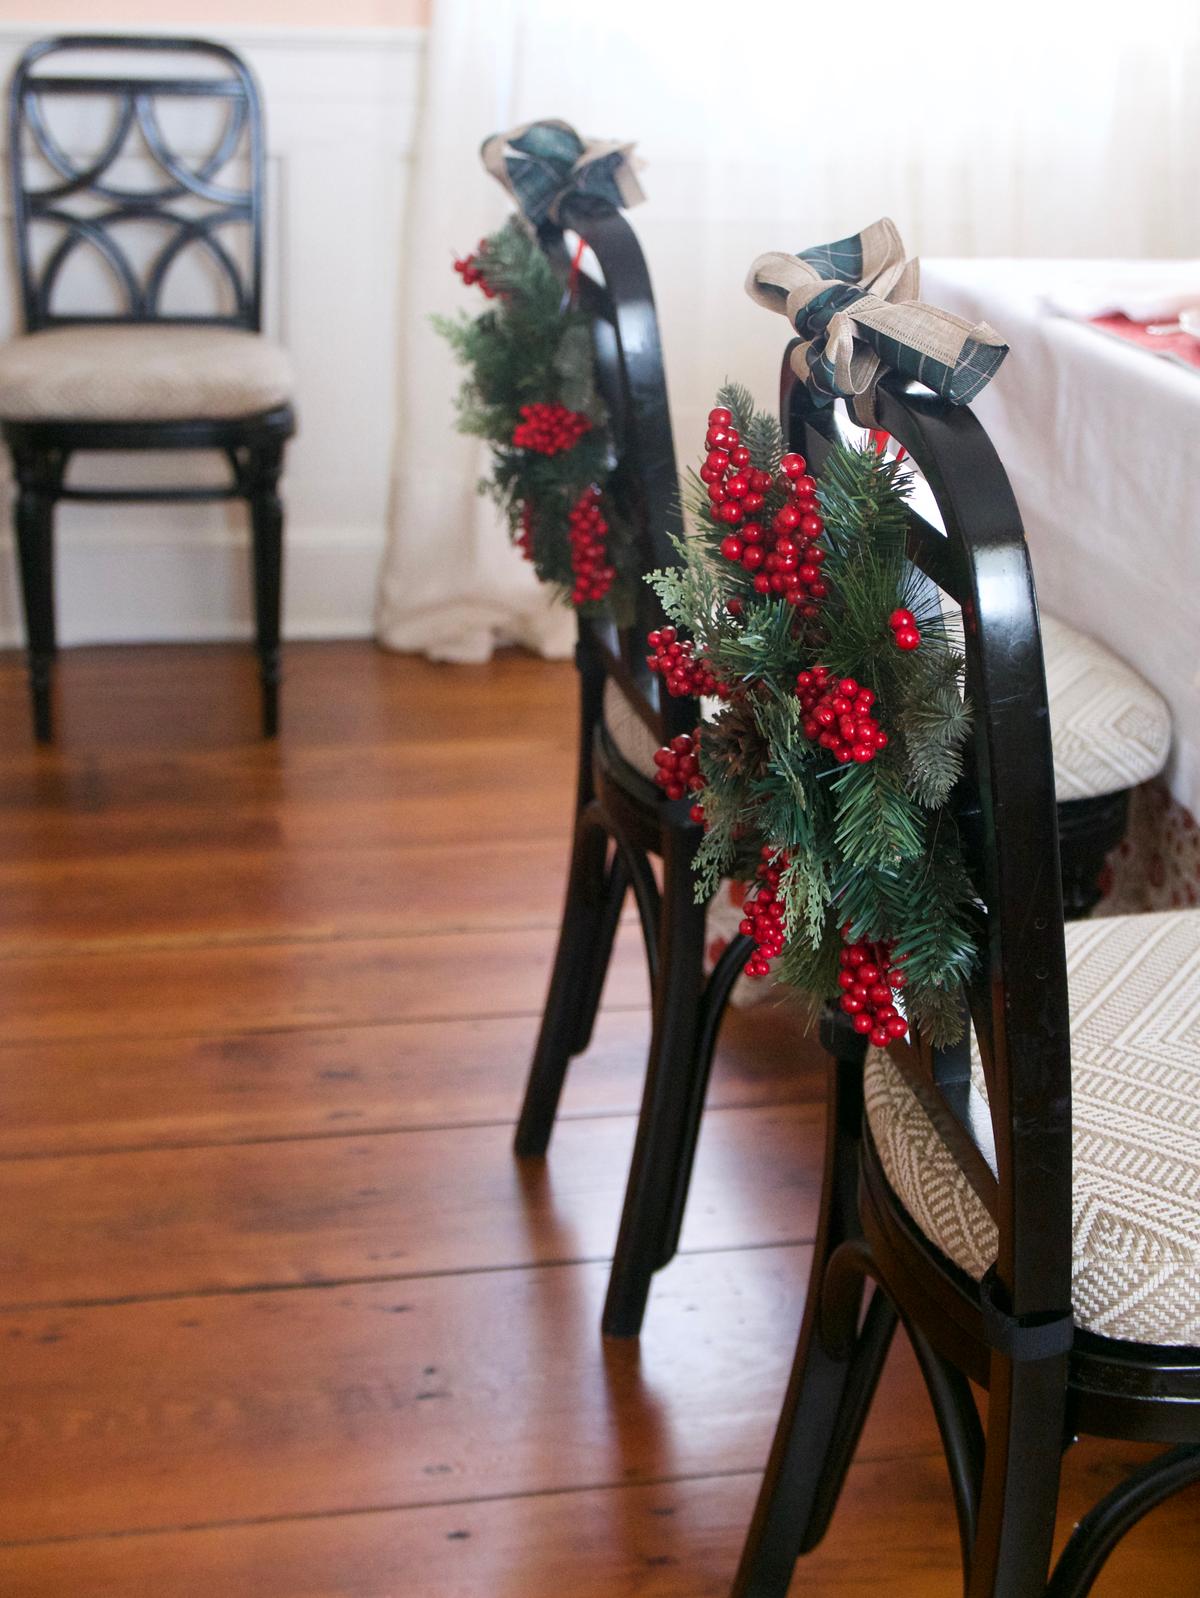 A wreath hung on each chair. (Victoria de la Maza)